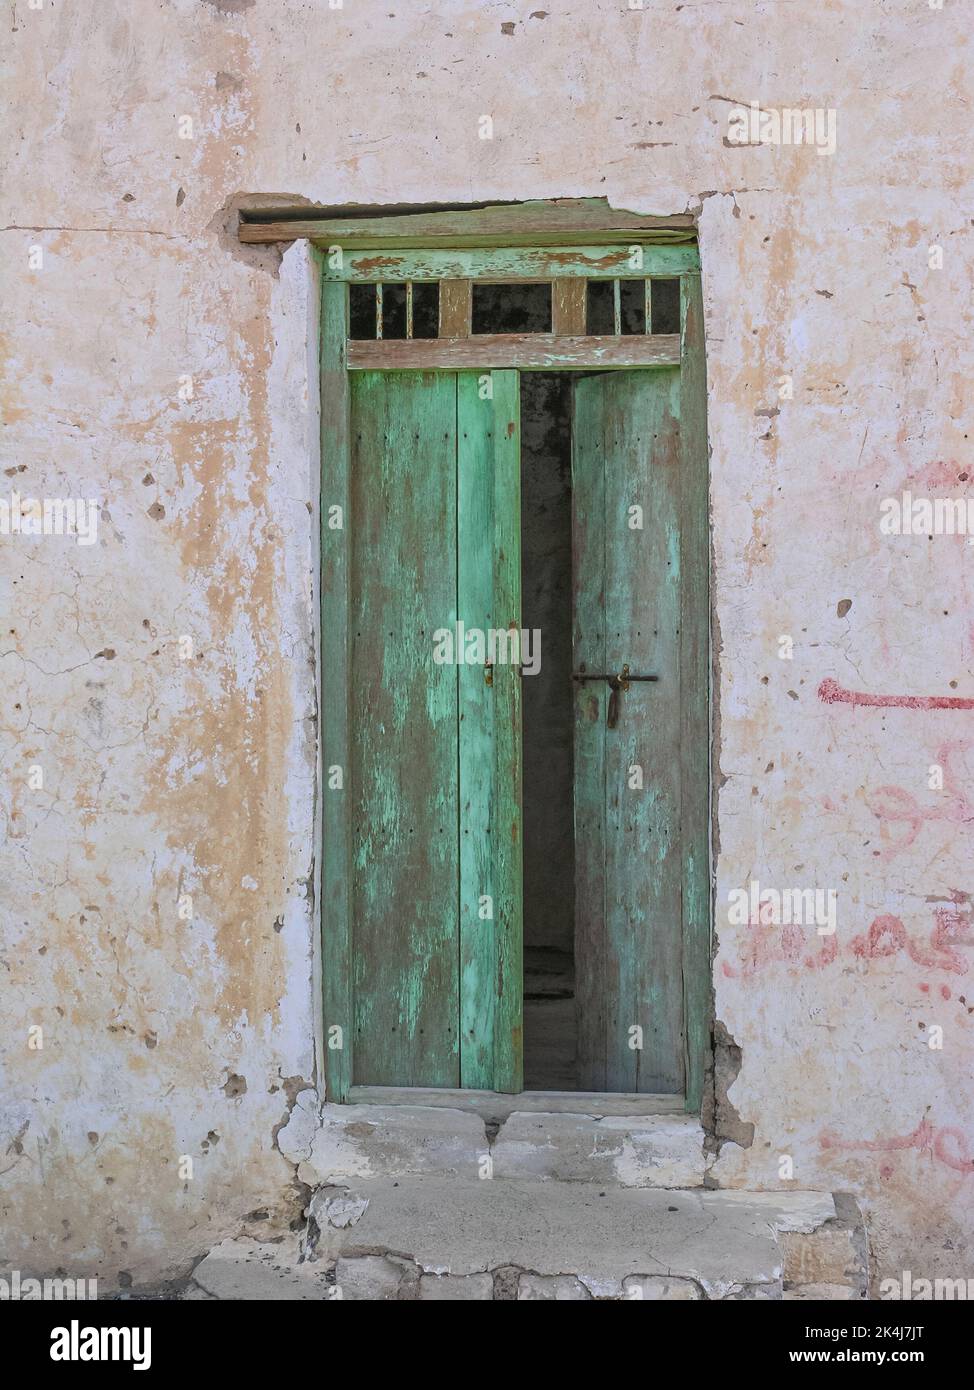 L'entrée d'une vieille cantine en ruine à Tawi Fili dans l'émirat de Sharjah dans les Émirats arabes Unis. Banque D'Images